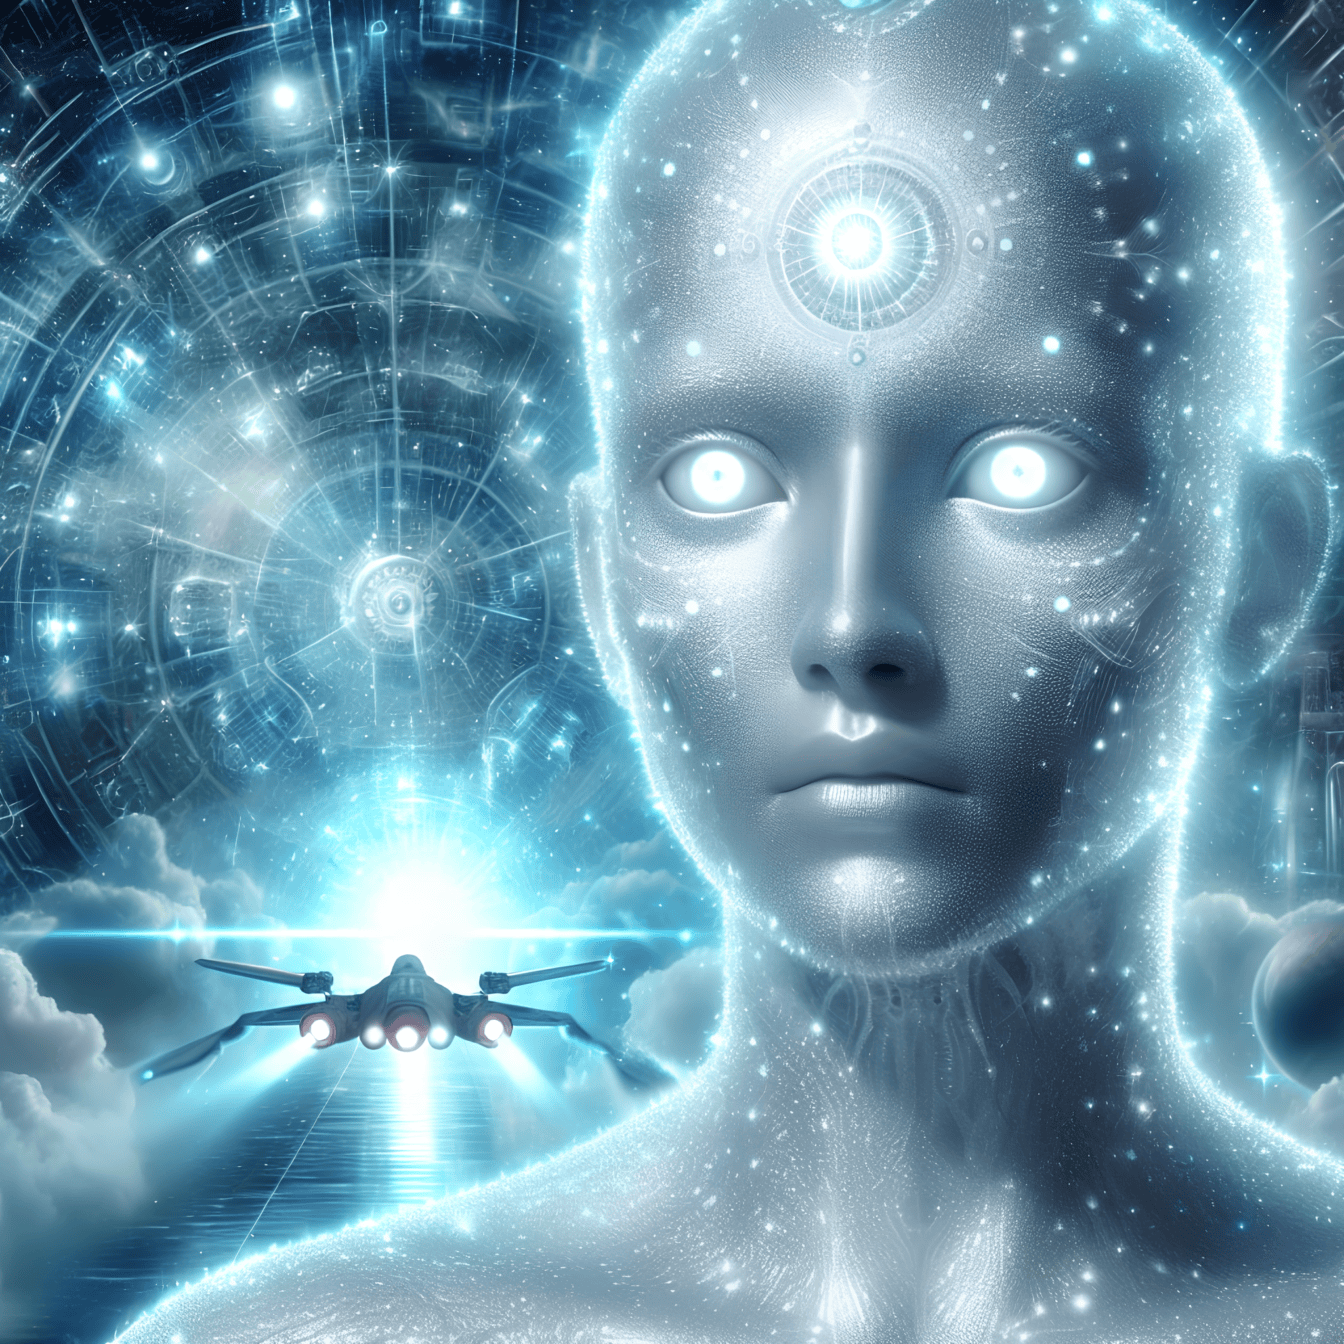 En kunstig intelligens udenjordisk cyborg, en humanoid alien med rumskib i baggrunden